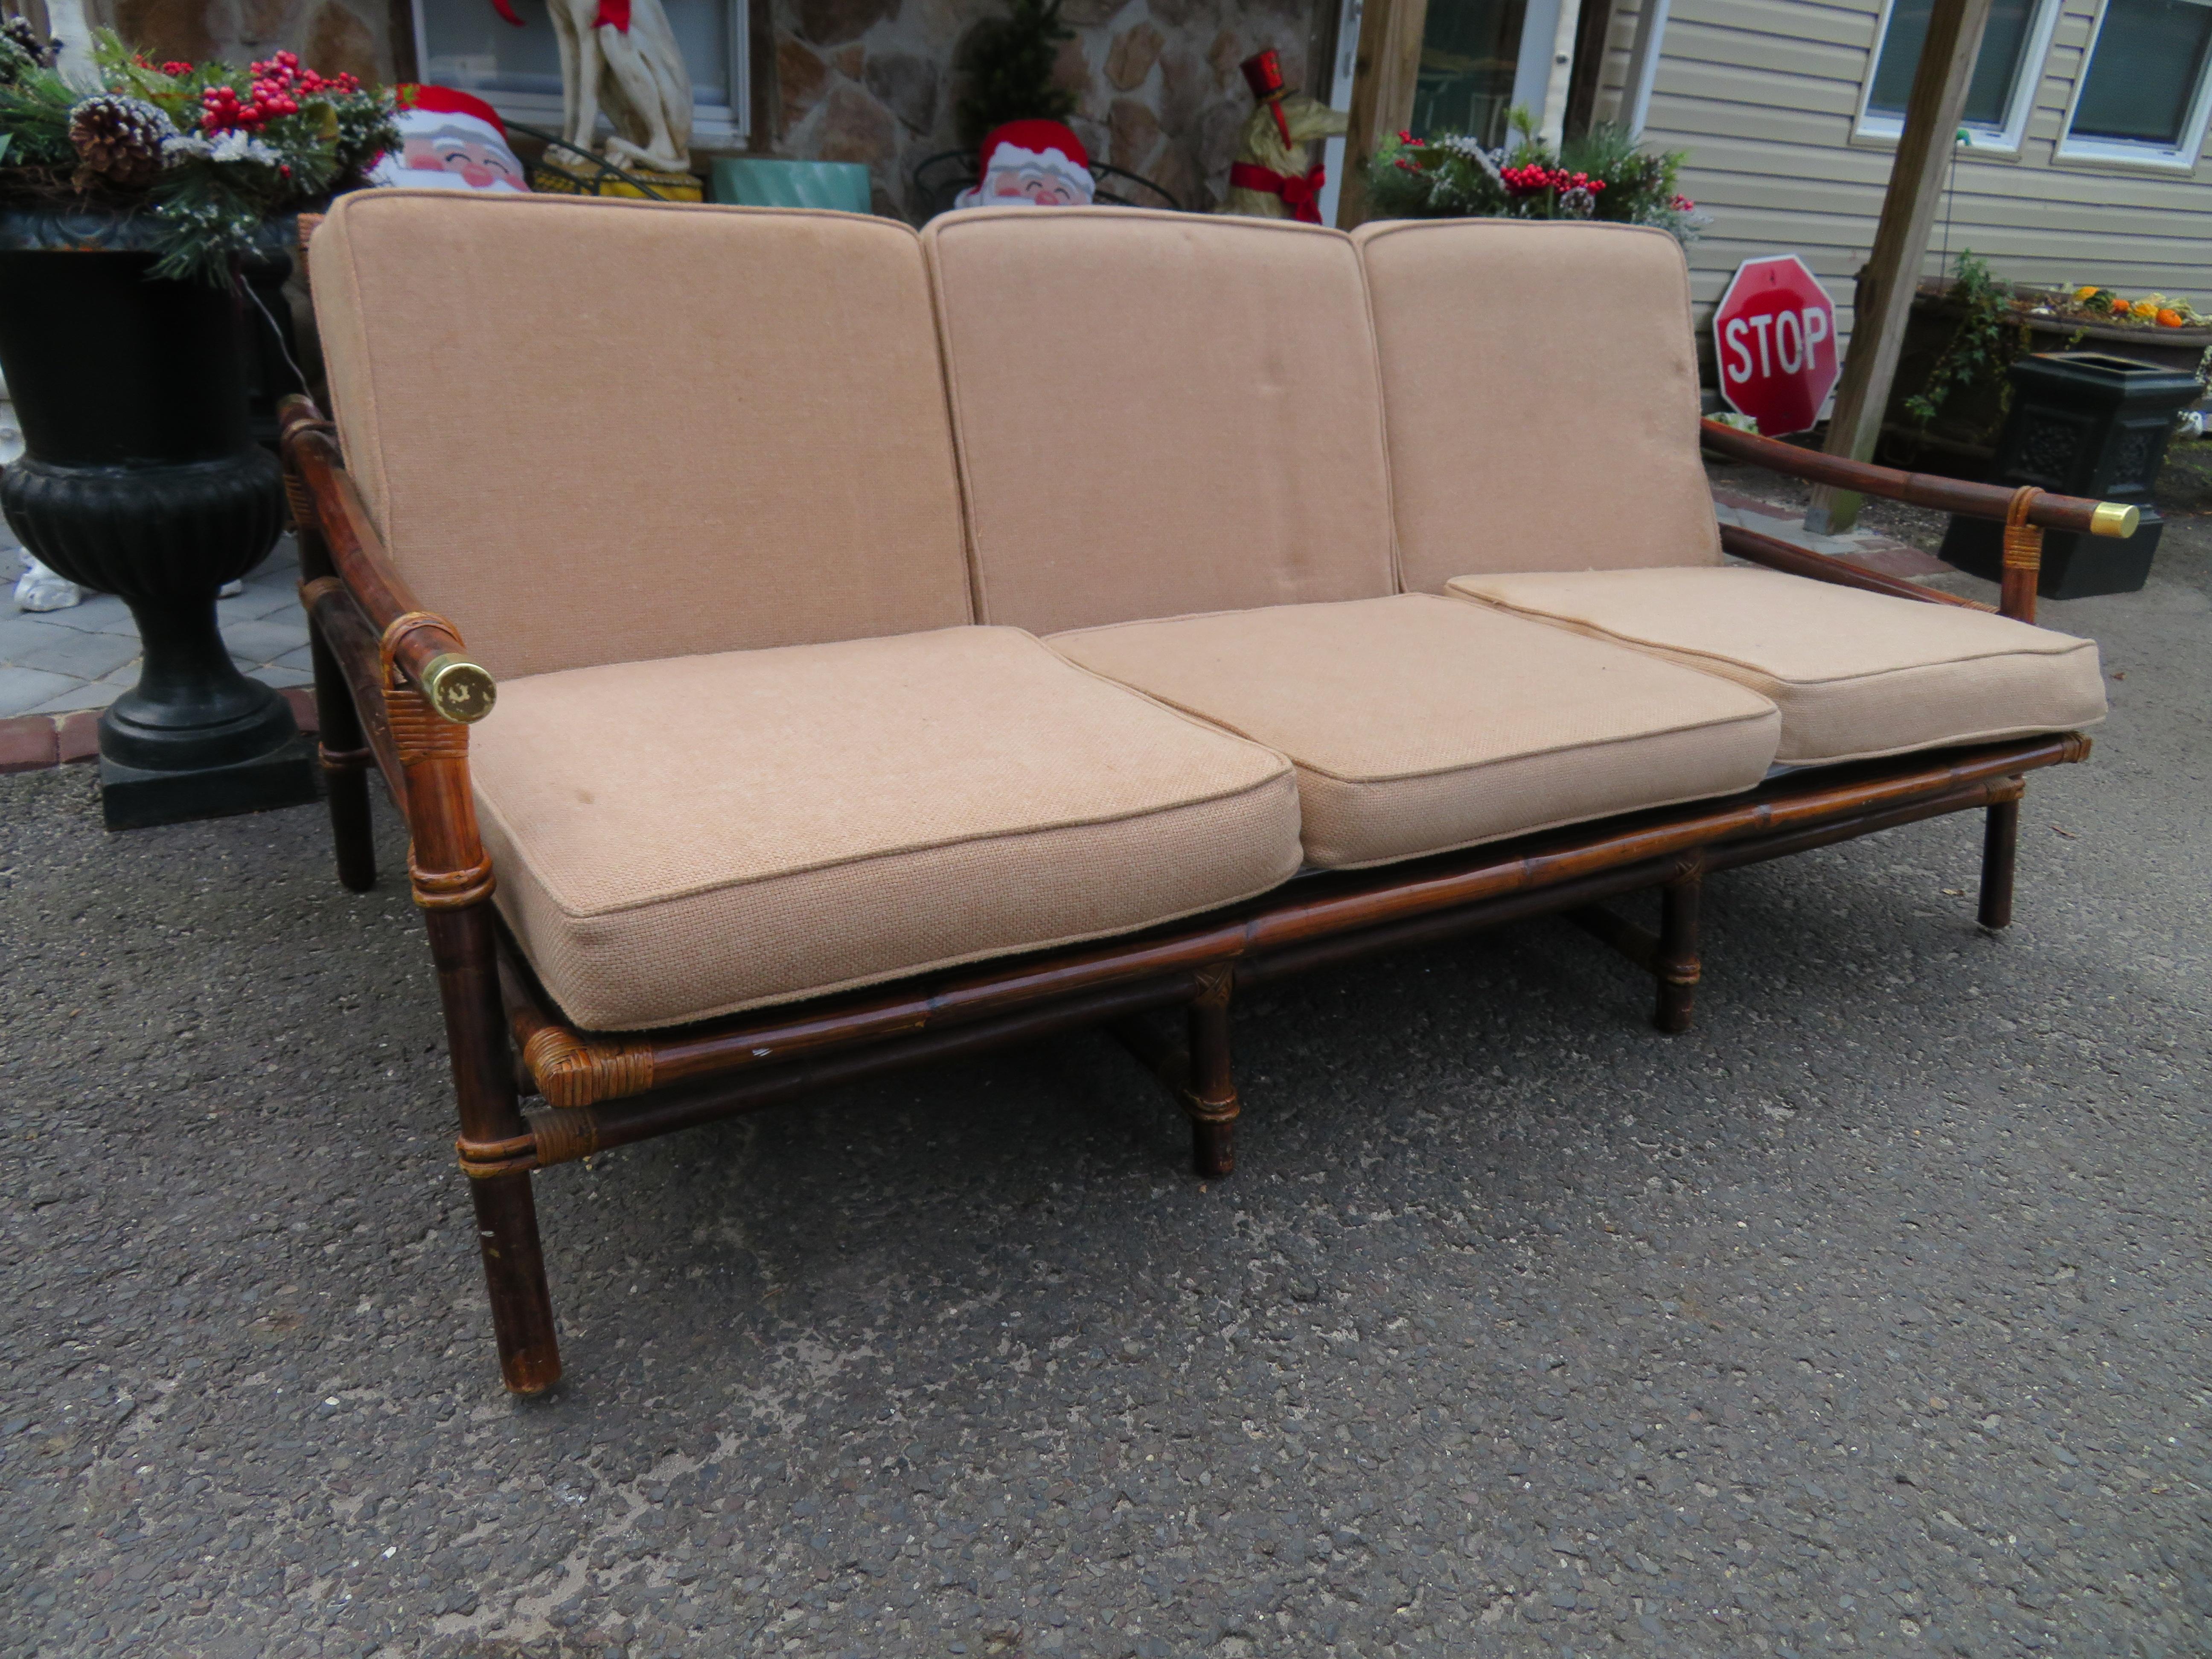 Wunderschönes Vintage-Rattan-Sofa im Campaigner-Stil aus Ficks Schilf der Far Horizon Collection, entworfen von John Wisner.  Wir lieben die warme, hellbraune Bambusfarbe dieses Stücks, die zu anderen Stücken aus dieser Collection'S passt, die wir